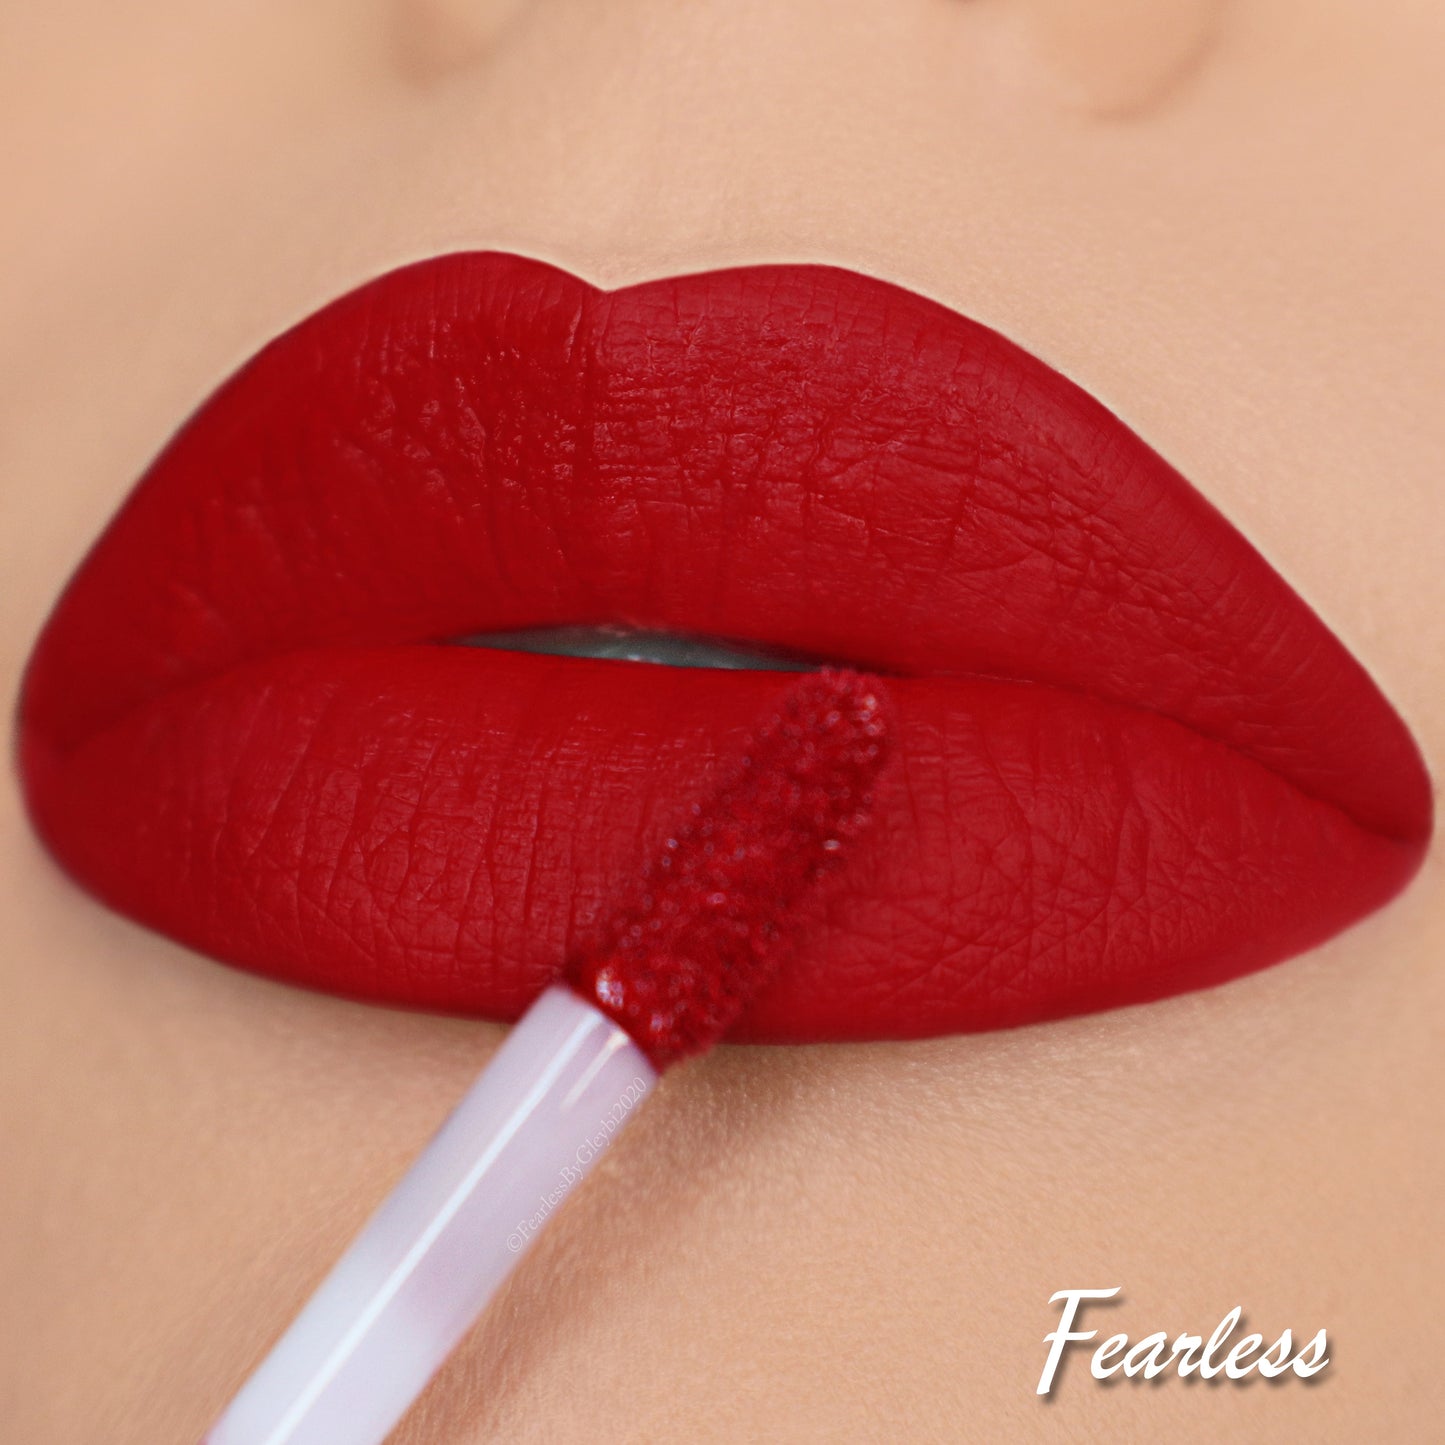 “Fearless” Matte Liquid Lipstick. 💋